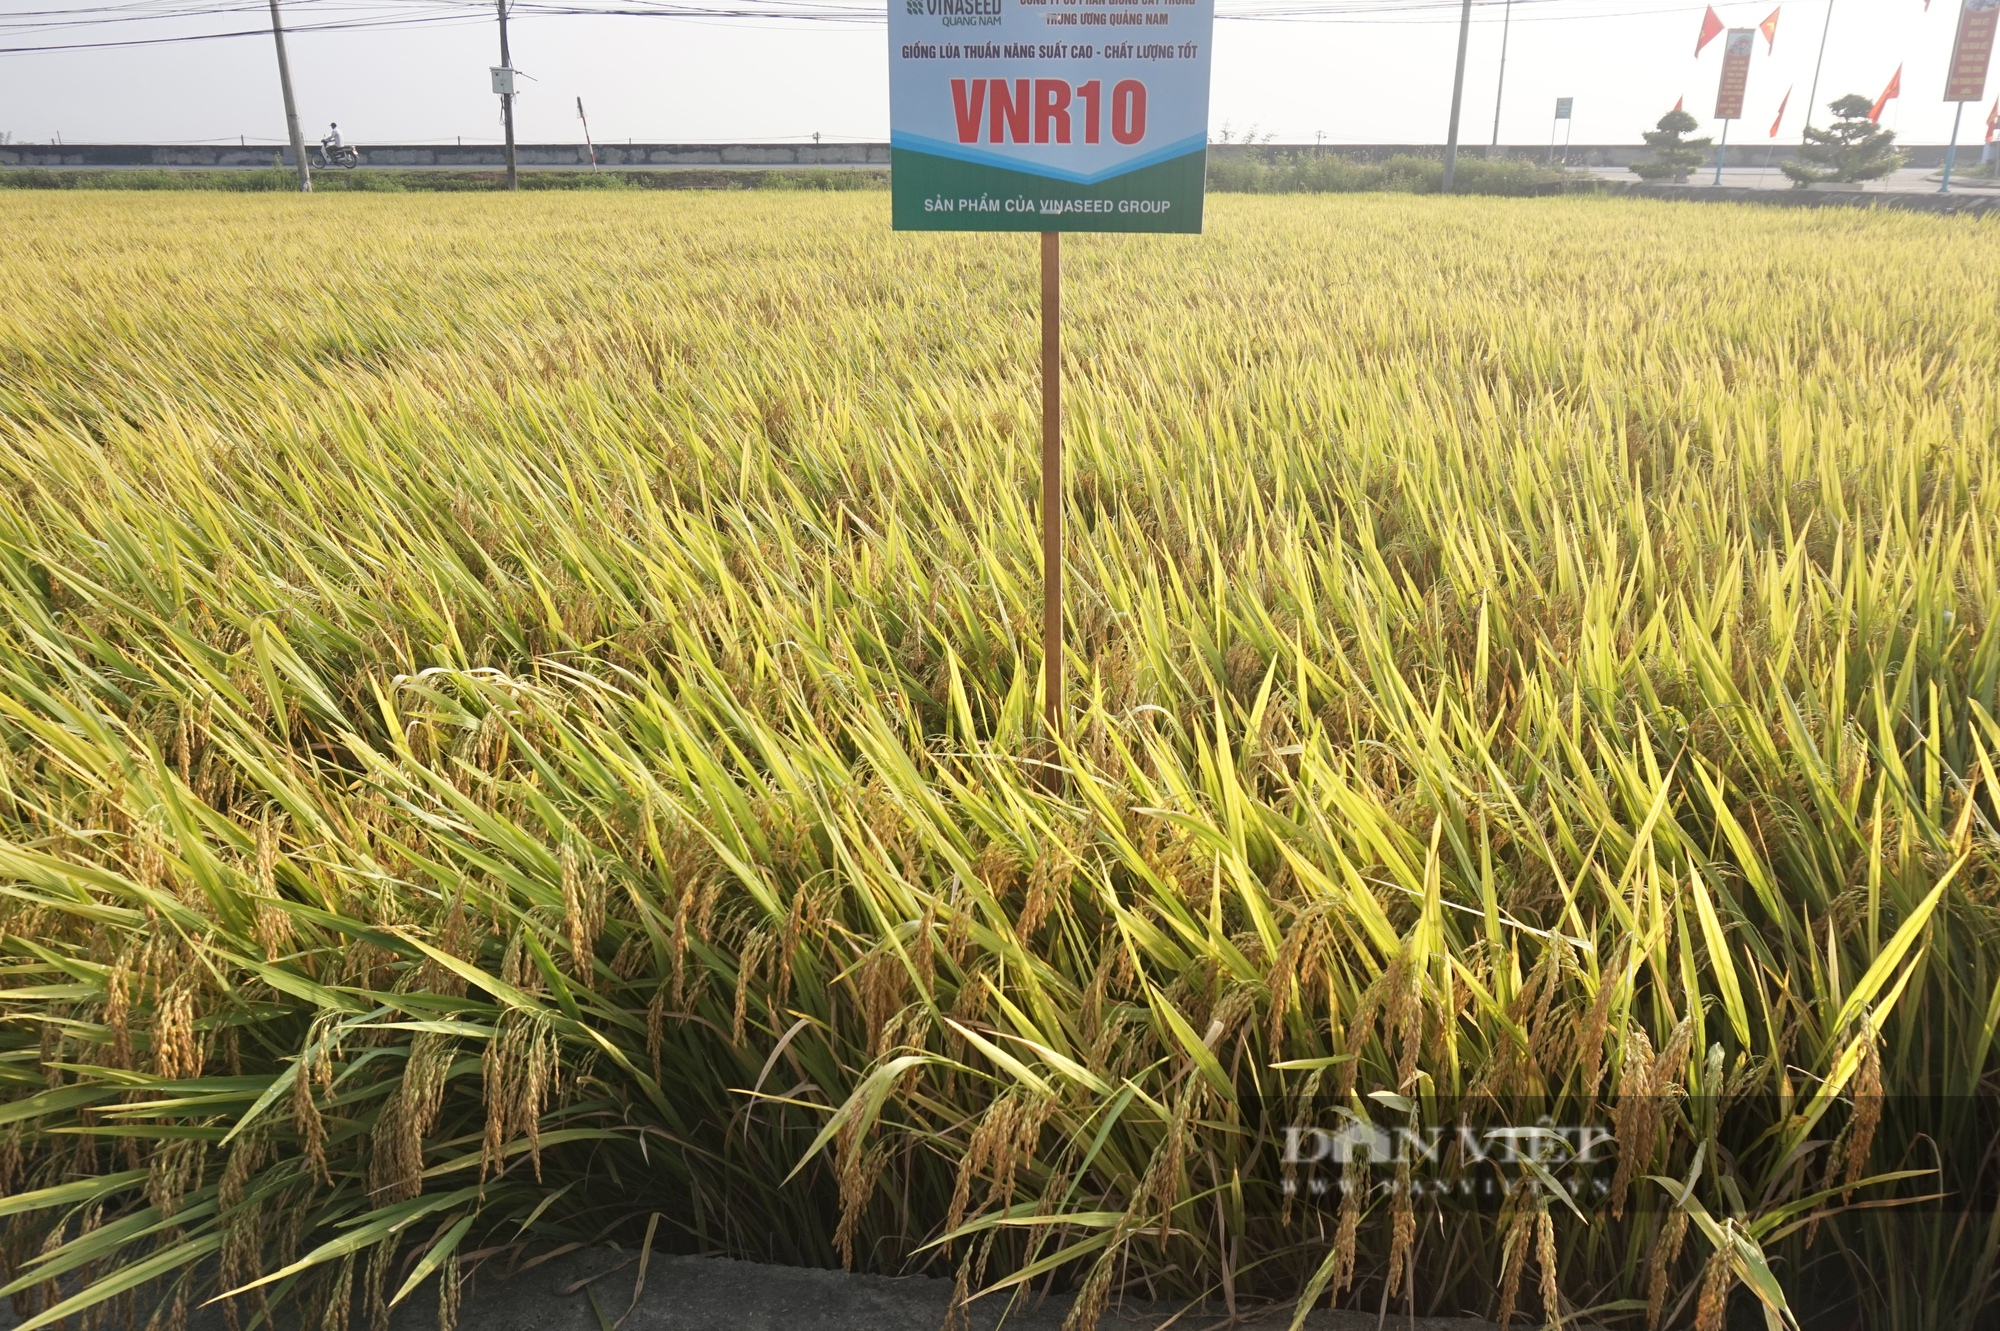 Bộ tứ lúa giống của Vinaseed “tỏa sáng” rực rỡ trên nhiều chân đất, nông dân xứ Quảng mê mẩn - Ảnh 6.